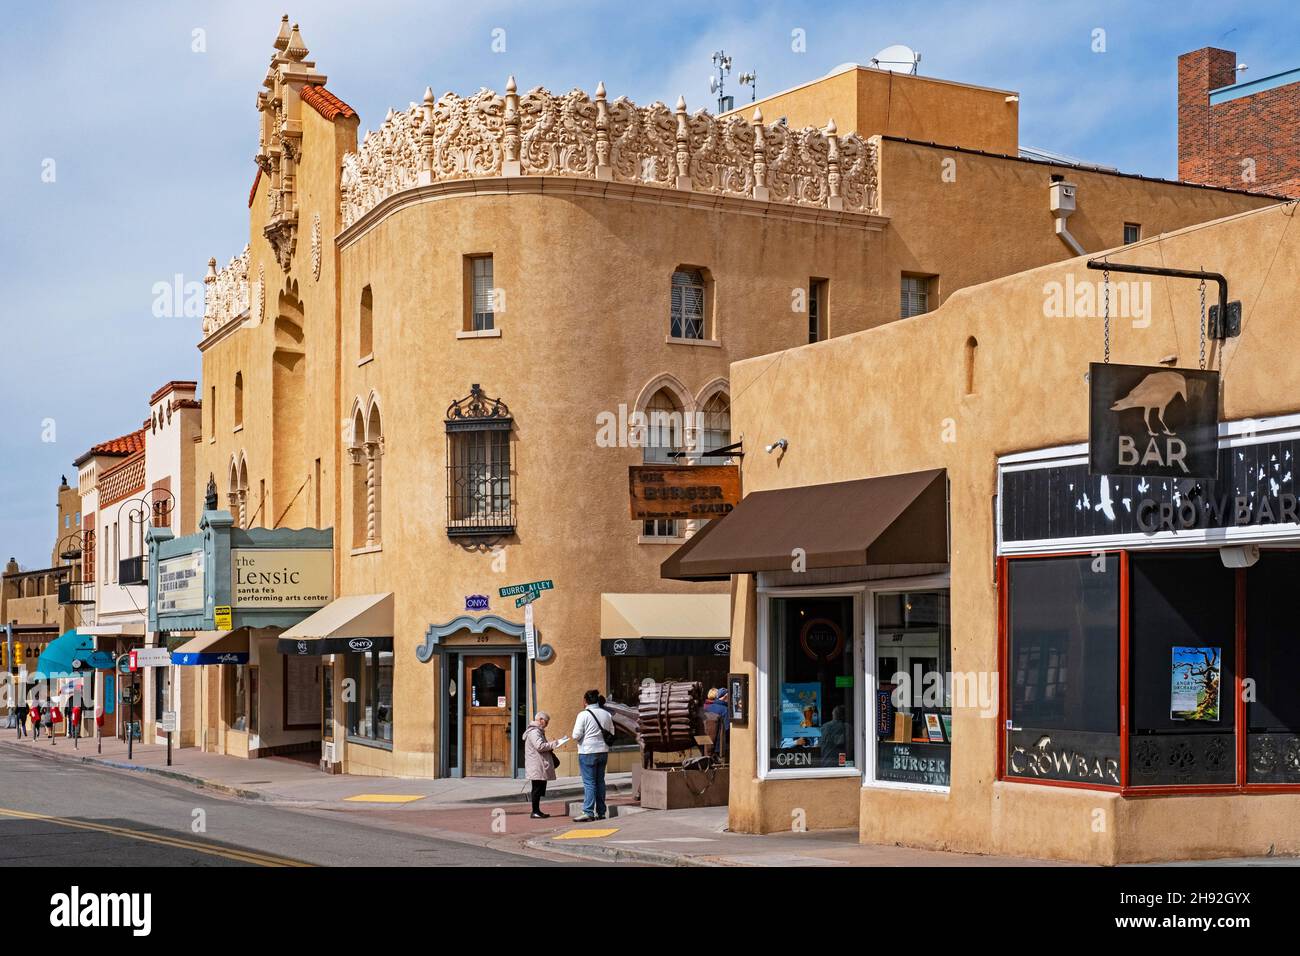 Geschäfte, Bars und Restaurants im adobe Pueblo Revival Stil in der Hauptstraße von Santa Fe, Hauptstadt von New Mexico, USA / USA Stockfoto